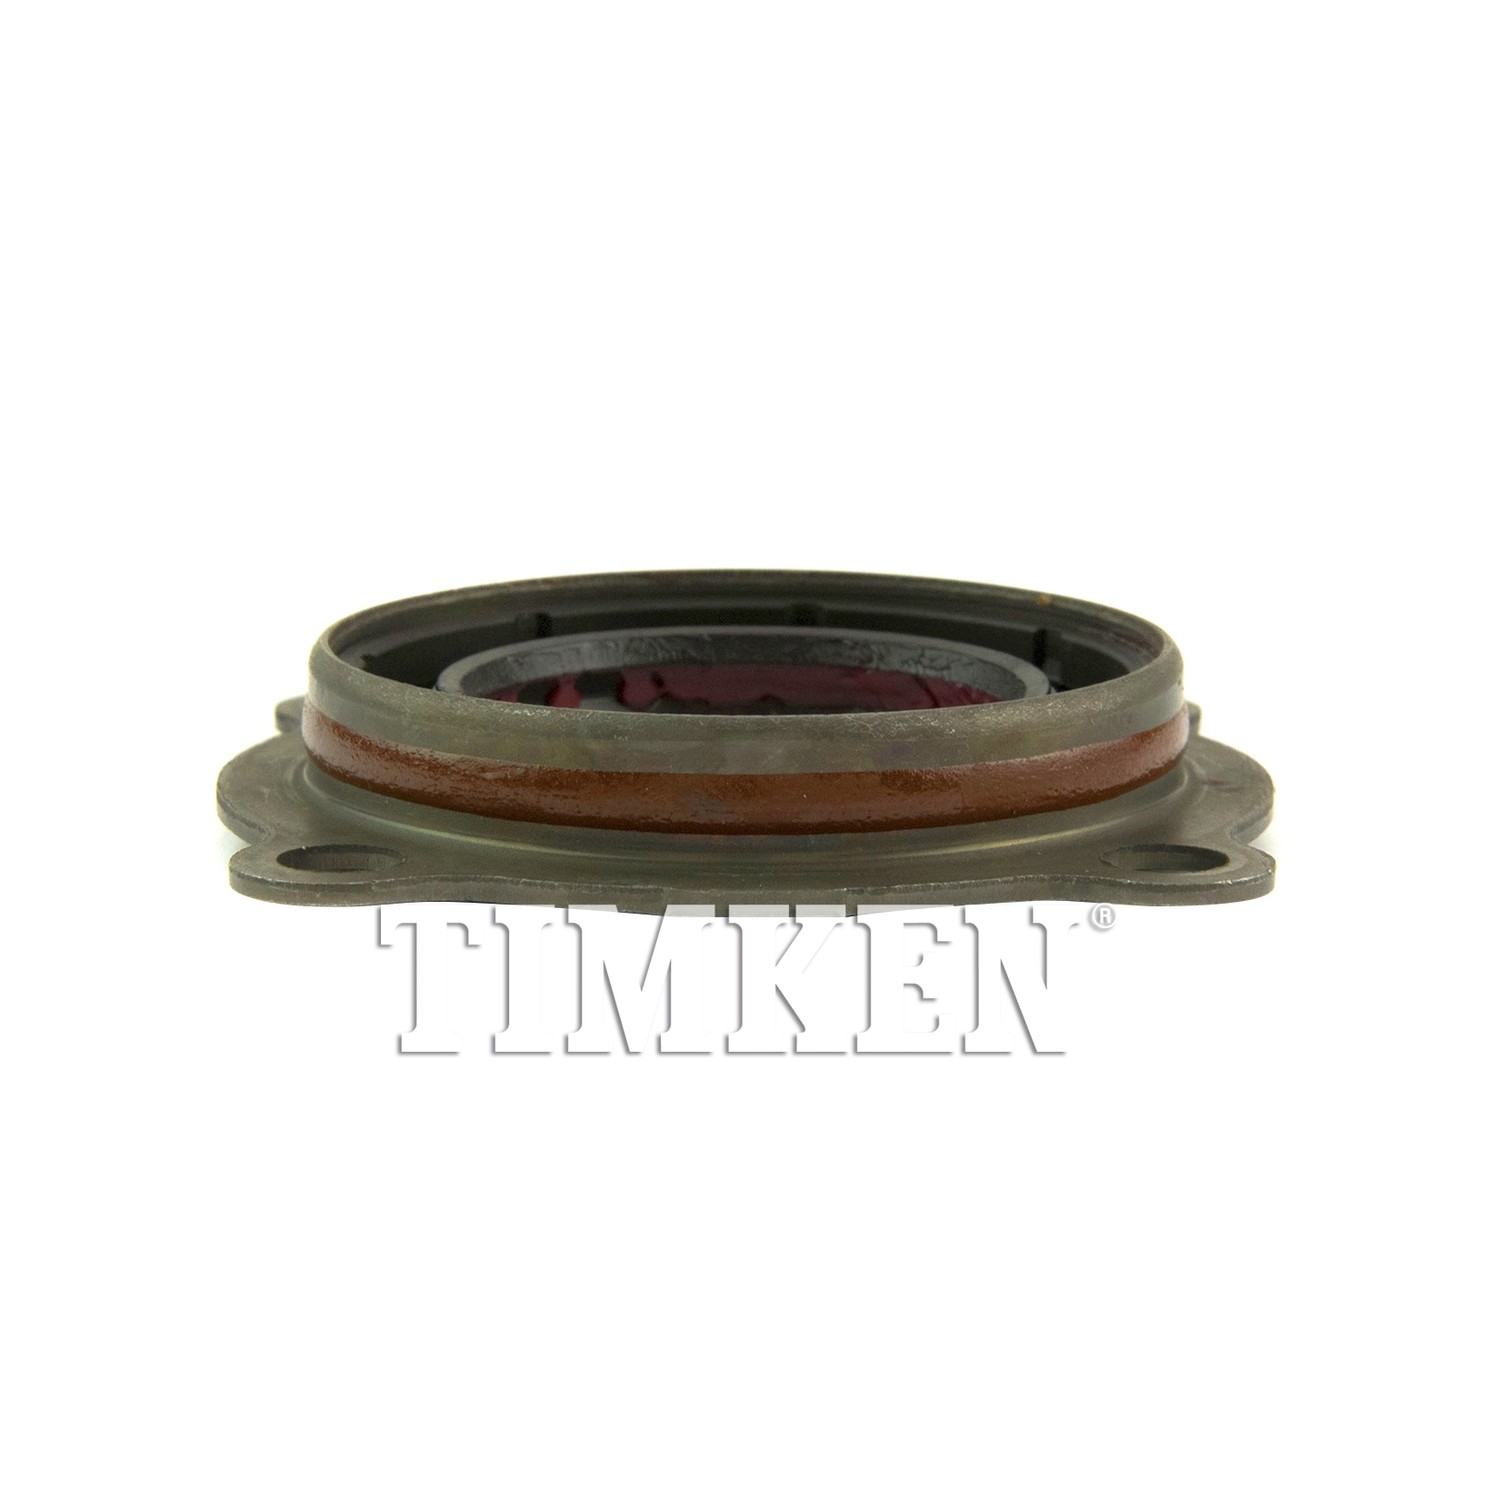 TIMKEN - Axle Shaft Seal - TIM SL260187